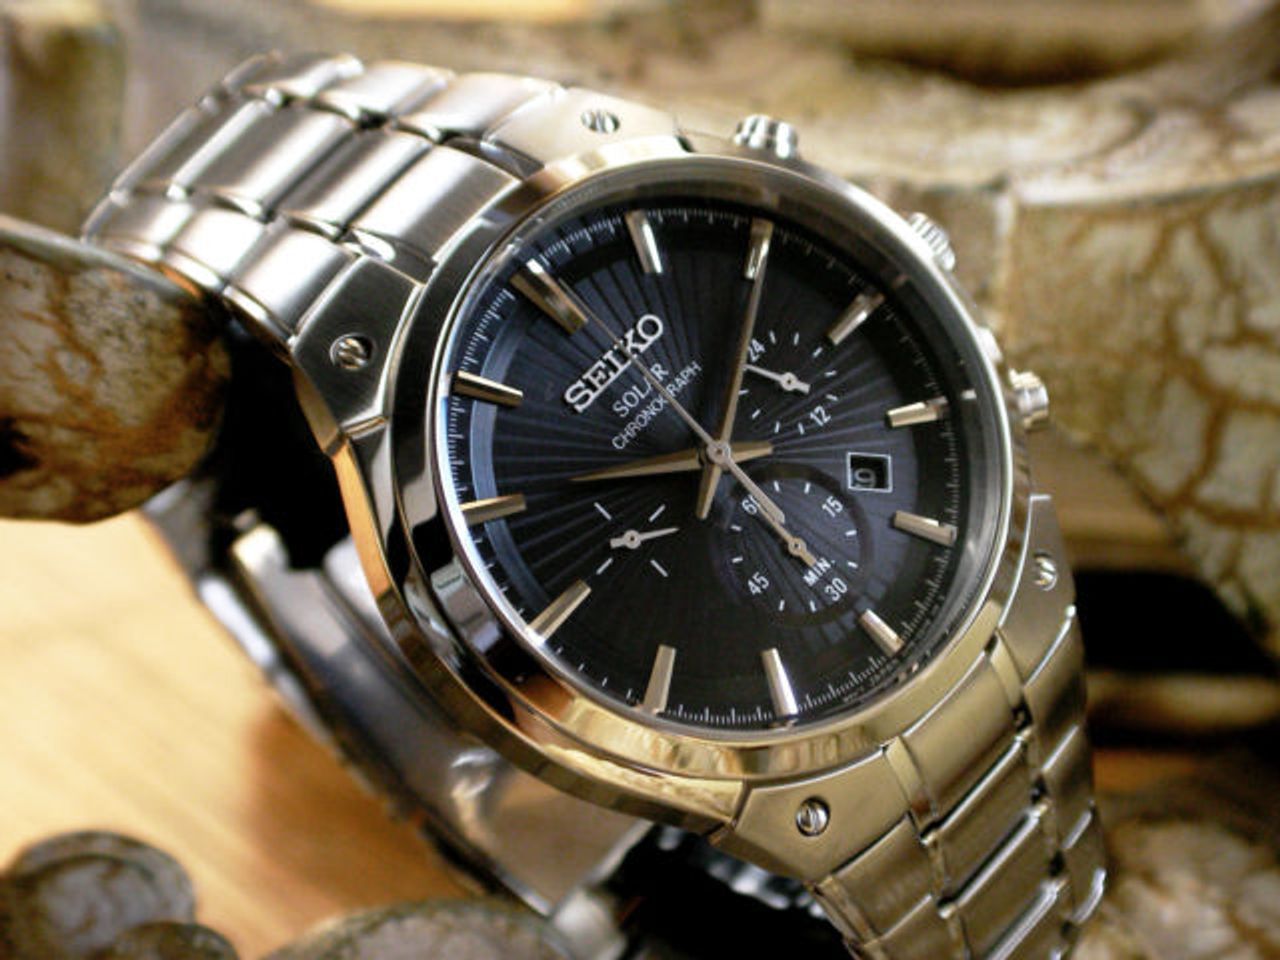 Đồng hồ Nhật Seiko Solar SSC317 có vỏ và gờ bezel làm bằng thép không gỉ sáng bóng, ánh lên vẻ đẹp của kim loại với màu xám phong cách